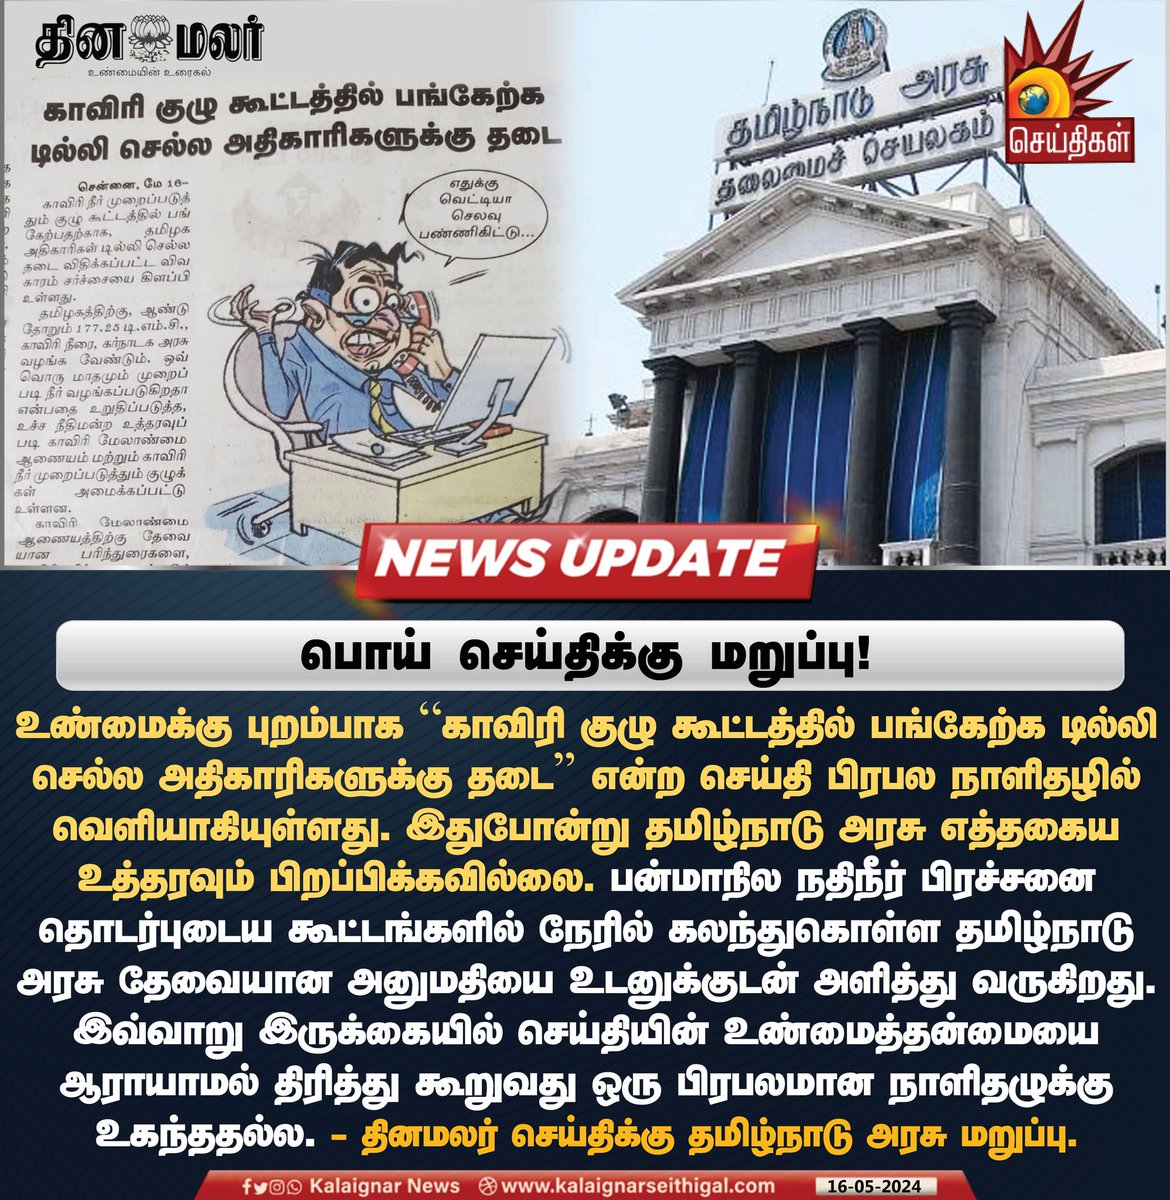 பொய் செய்திக்கு மறுப்பு!

#FakeNews #DinaMalar #TamilNaduGovt #Cauvery #KalaignarSeithigal